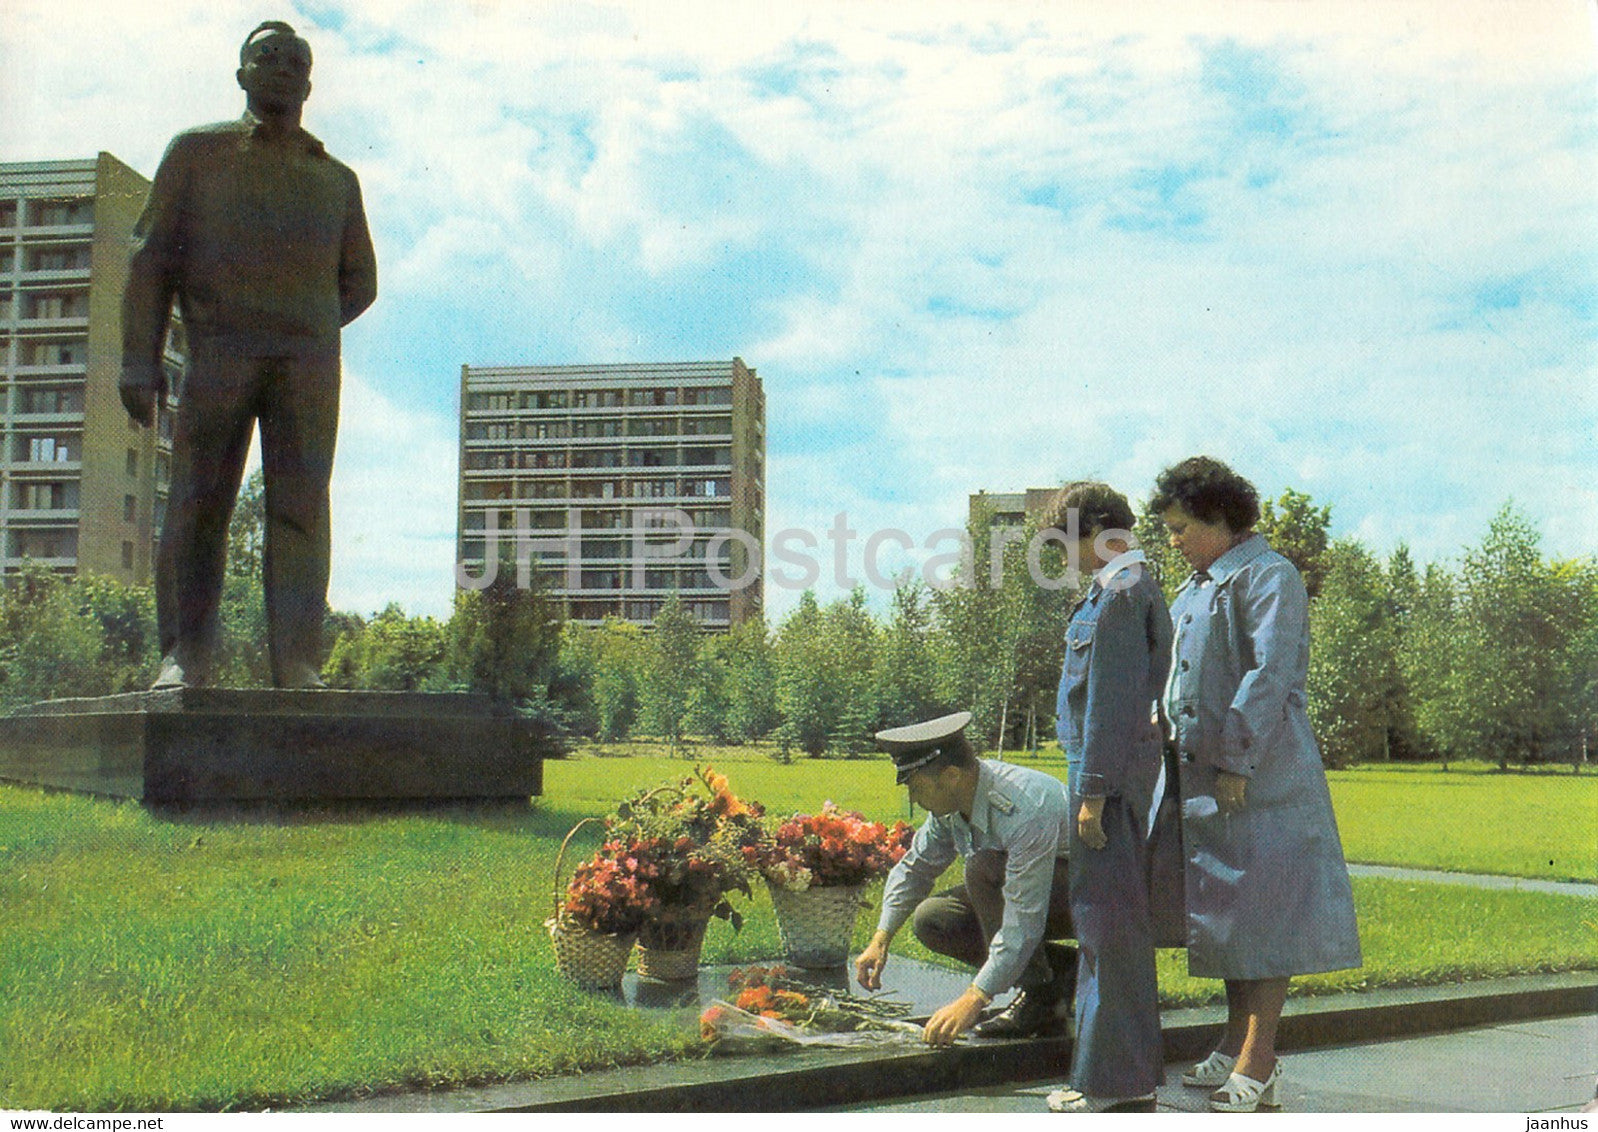 Gemeinsamer Kosmosflug UdSSR - DDR - Fliegerkosmonaut Sigmund Jahn - Gagarin Denkmal - cosmaonaut - Germany DDR- unused - JH Postcards